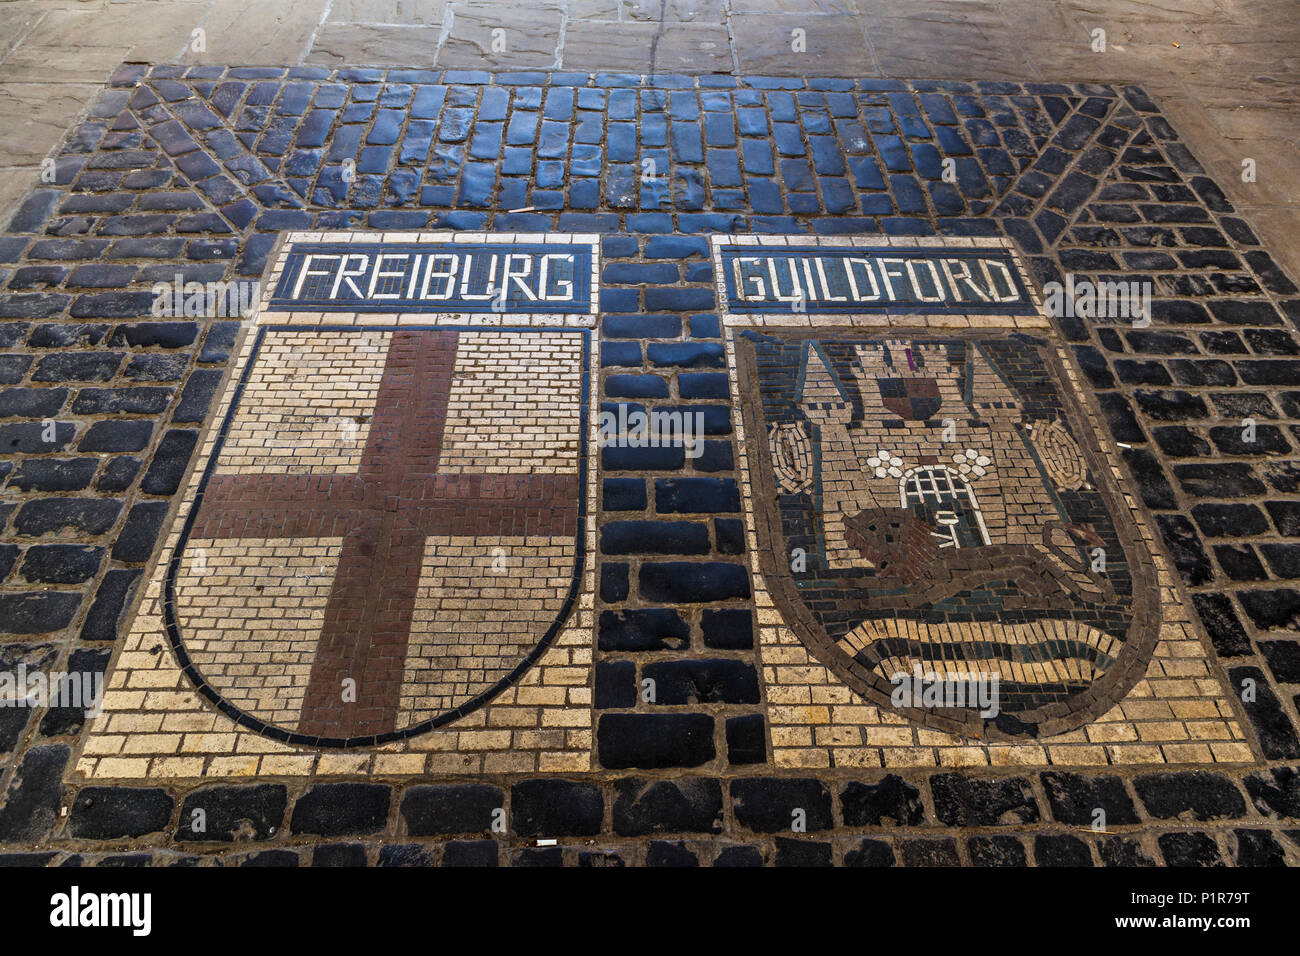 Pavé mosaïque dans Tunsgate, Guildford, ville du comté de Surrey, au sud-est de l'Angleterre, Royaume-Uni commémorant le jumelage avec Freiburg, Allemagne Banque D'Images